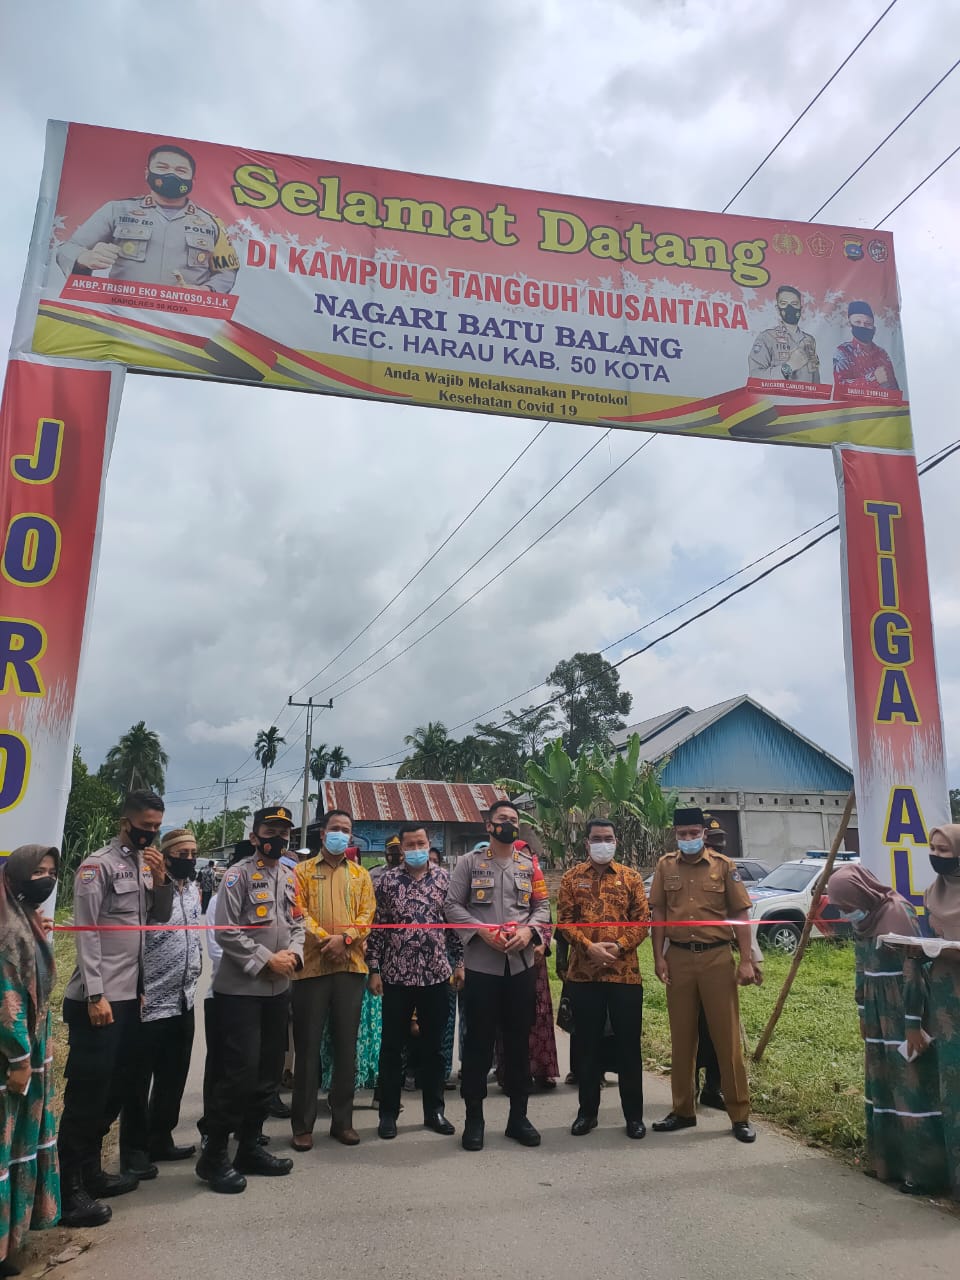 Nagari Baru Balang Pilot Project Kampung Tanguh Nusantara